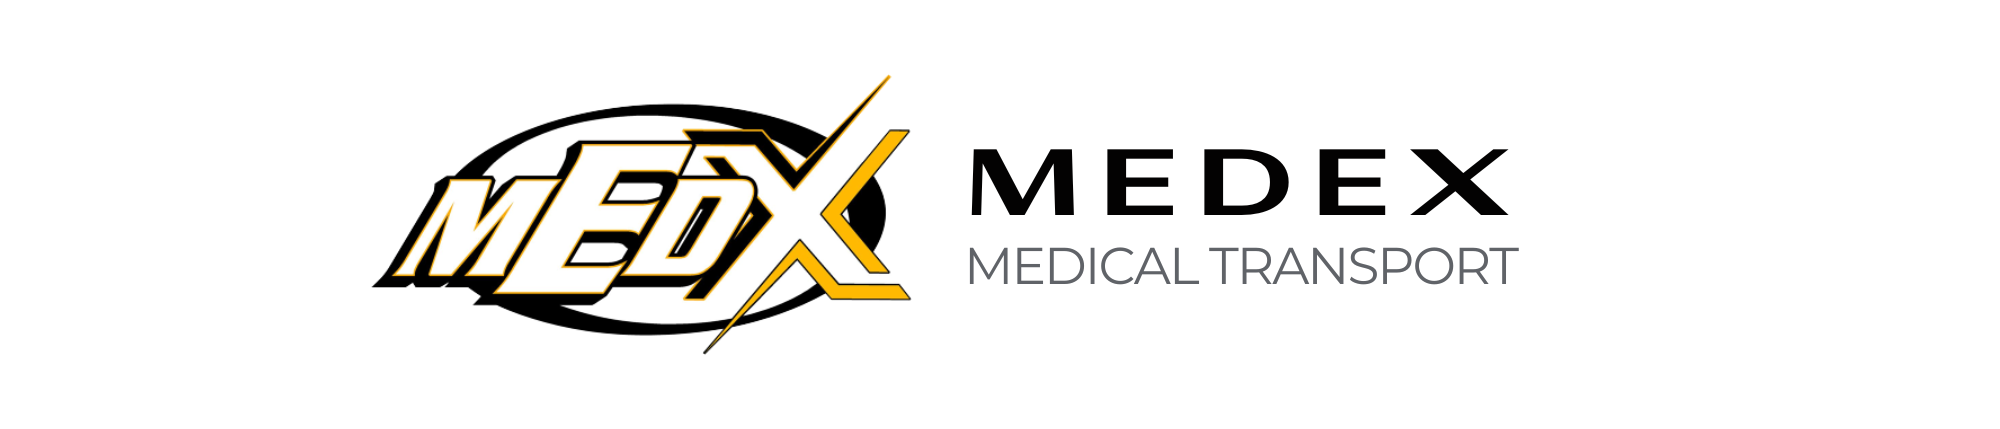 MedEx Medical Transport